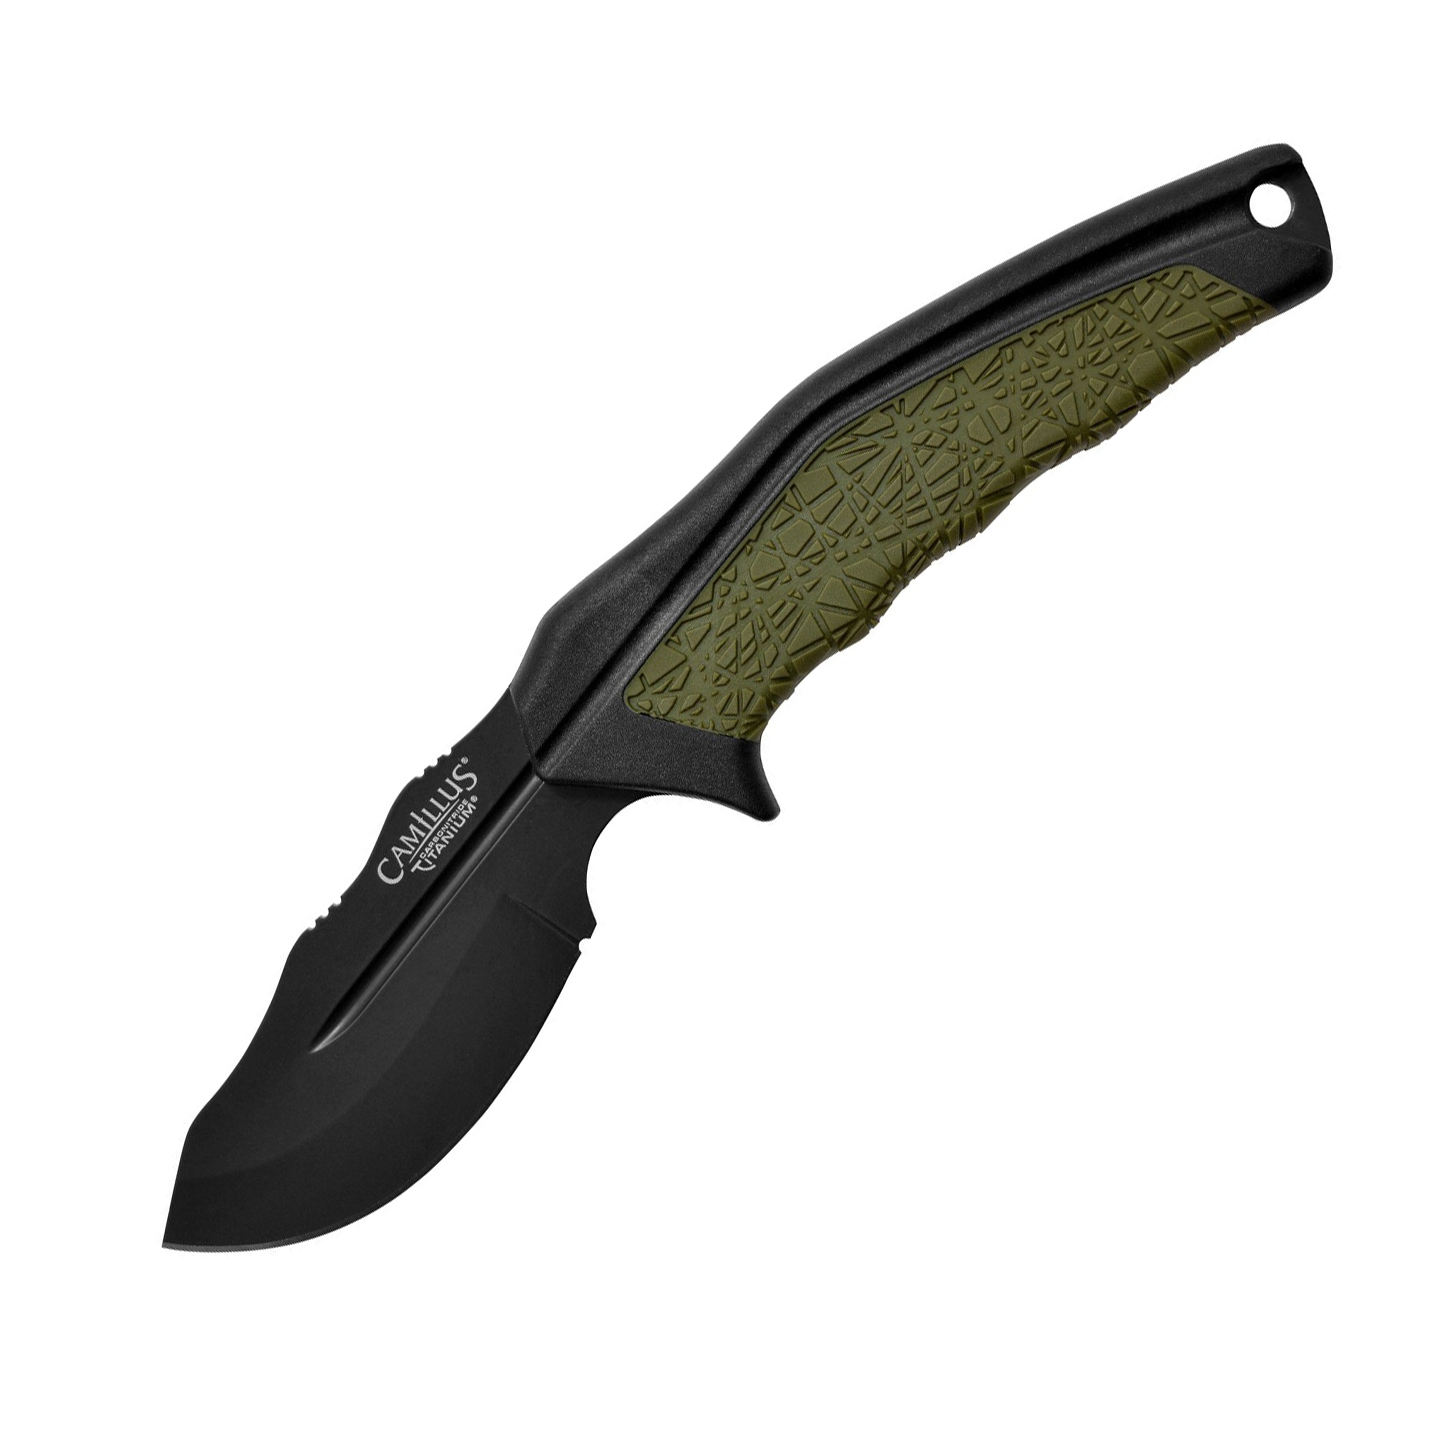 Нож с фиксированным клинком Camillus HT-8.5, сталь AUS-8, рукоять термопластик GRN, зеленый нож с фиксированным клинком ontario rd4 micarta серрейтор